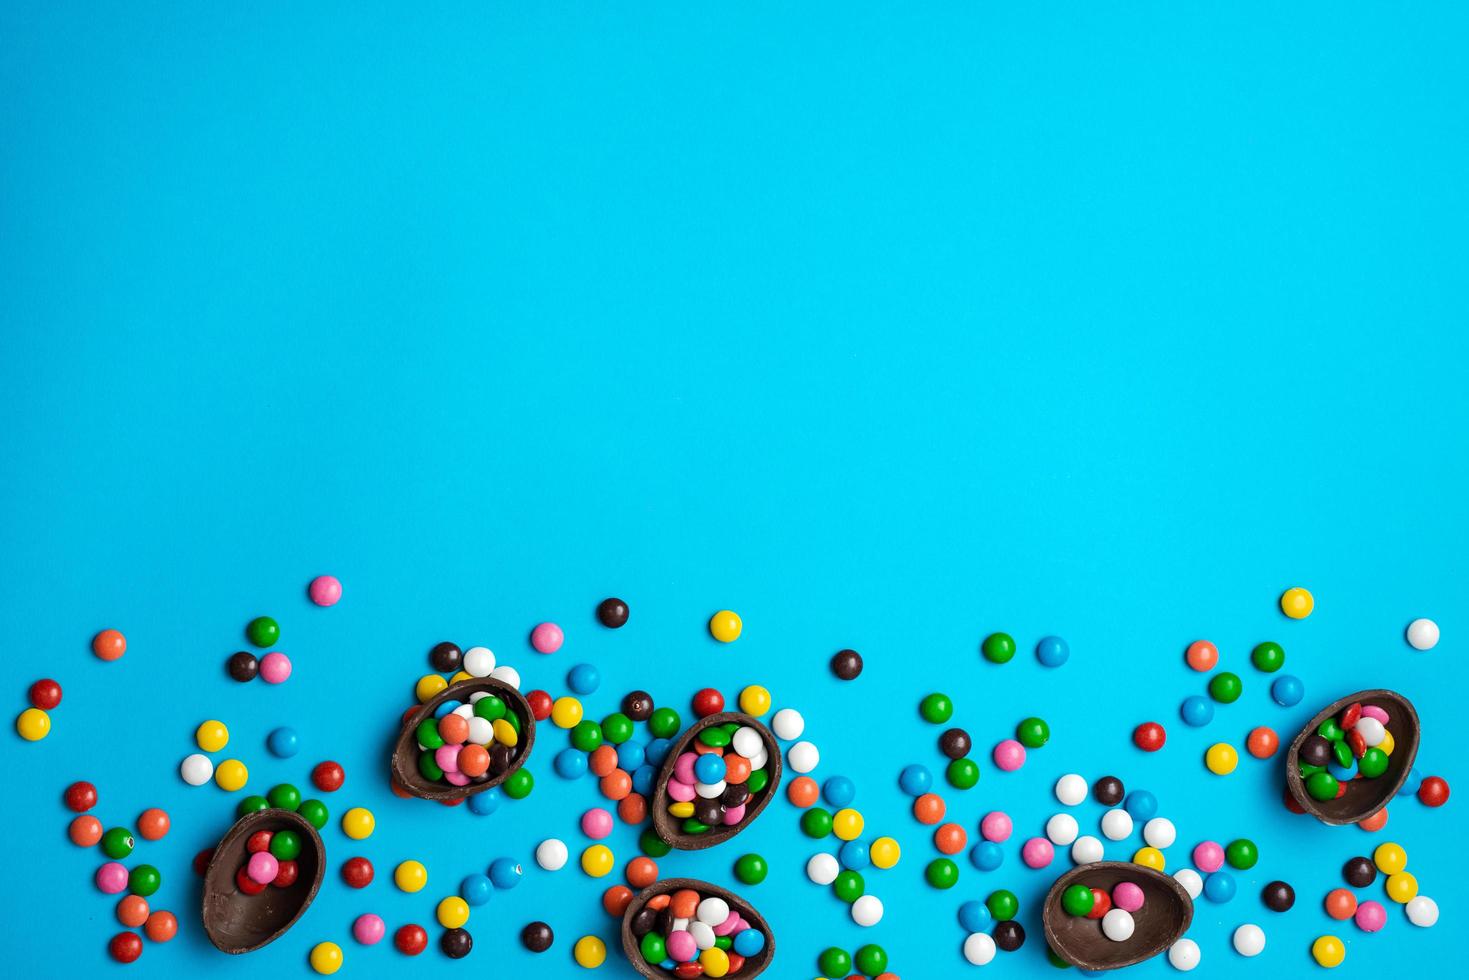 huevo de pascua de chocolate con colorida explosión de caramelos y dulces sobre un fondo azul. endecha plana. vista superior foto